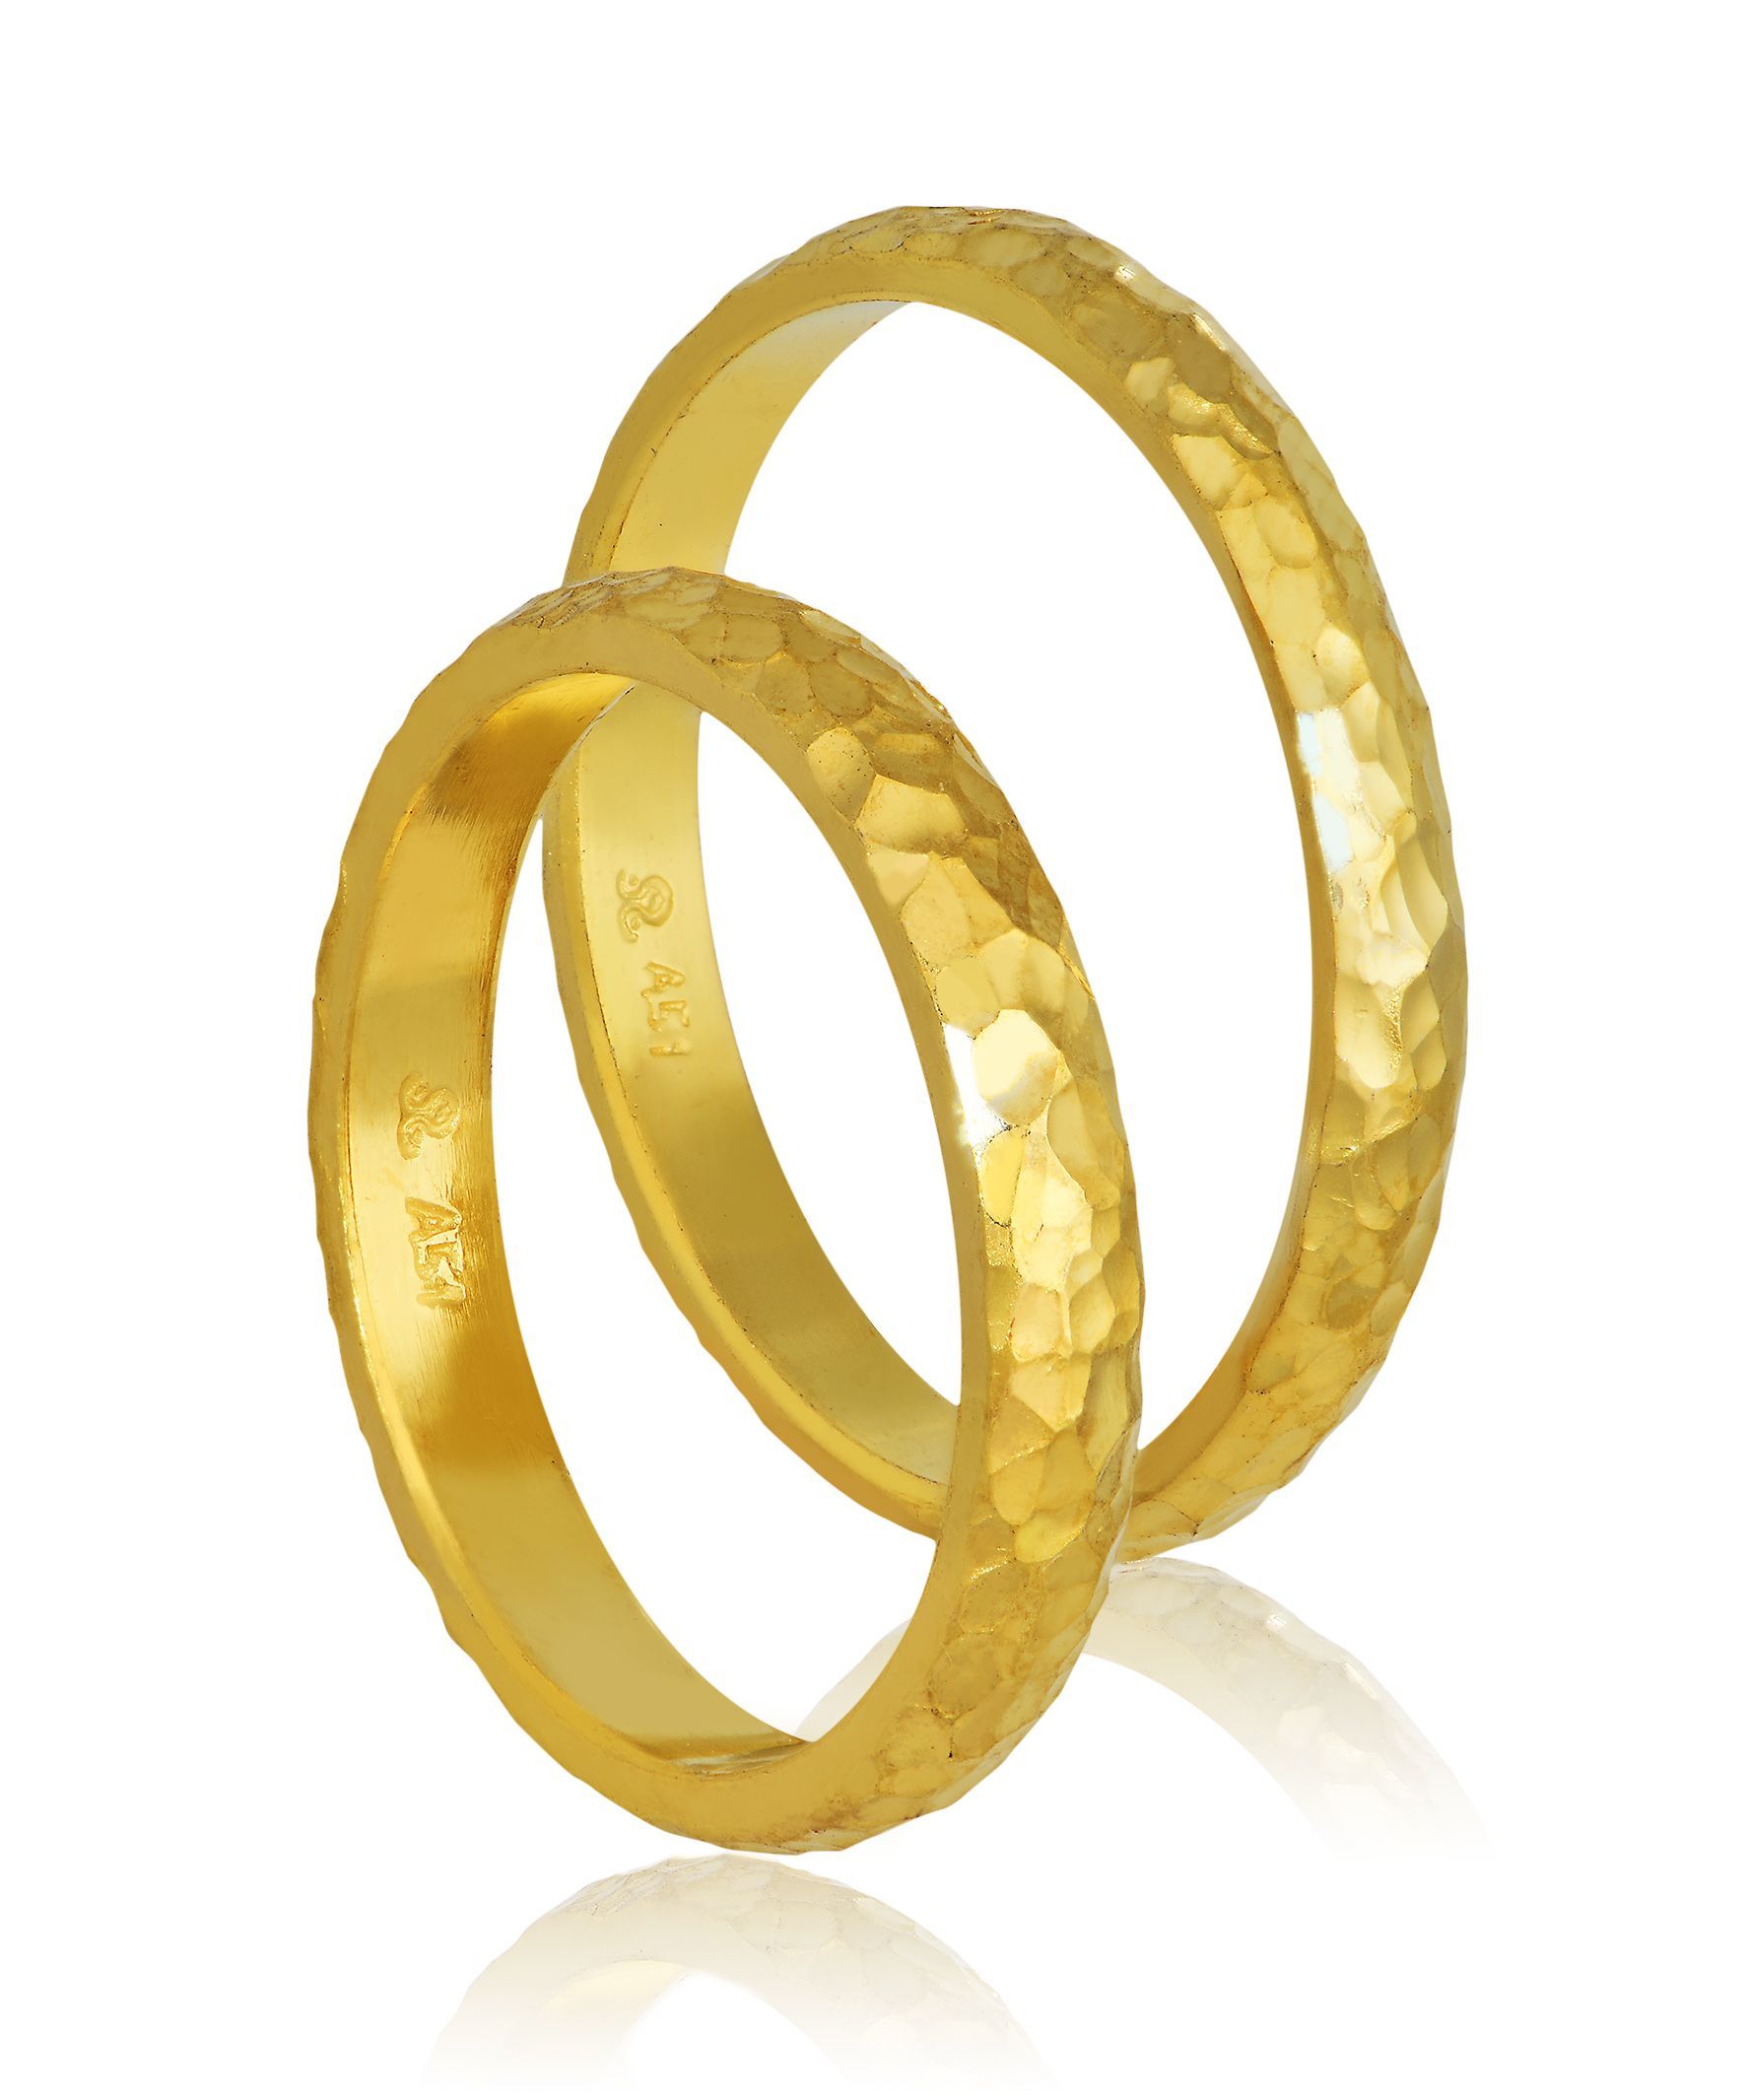 Golden wedding rings 3mm (code 410)